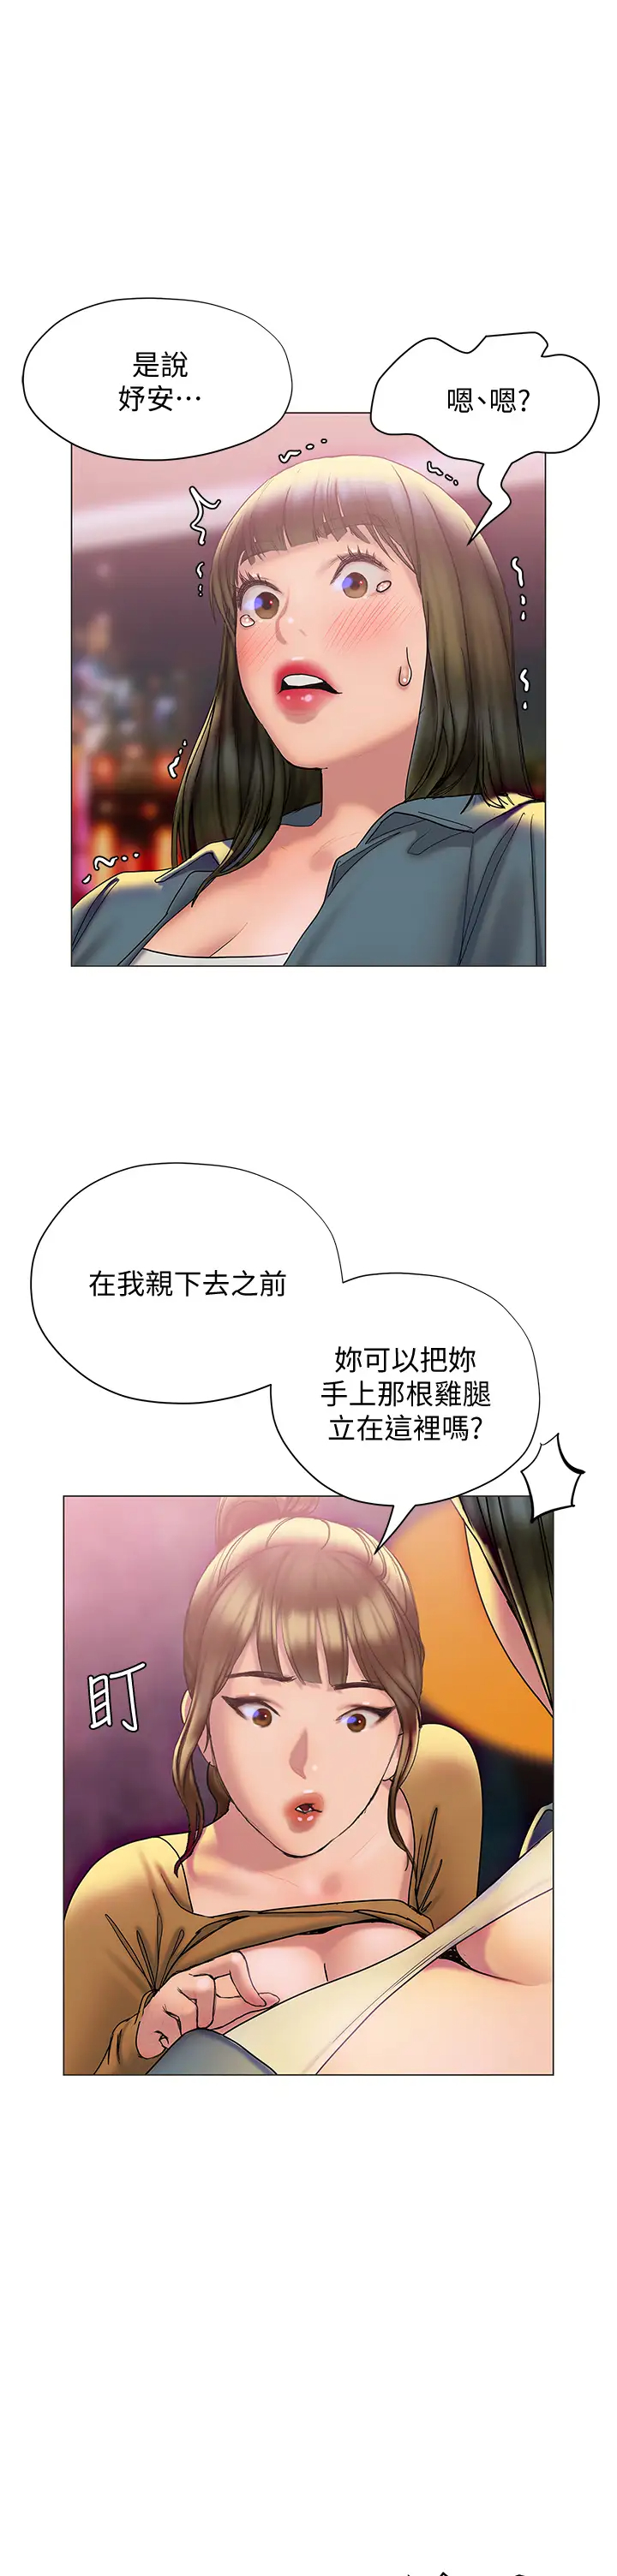 韩国污漫画 終曖昧結 第26话攻略男人的「深喉咙」 29